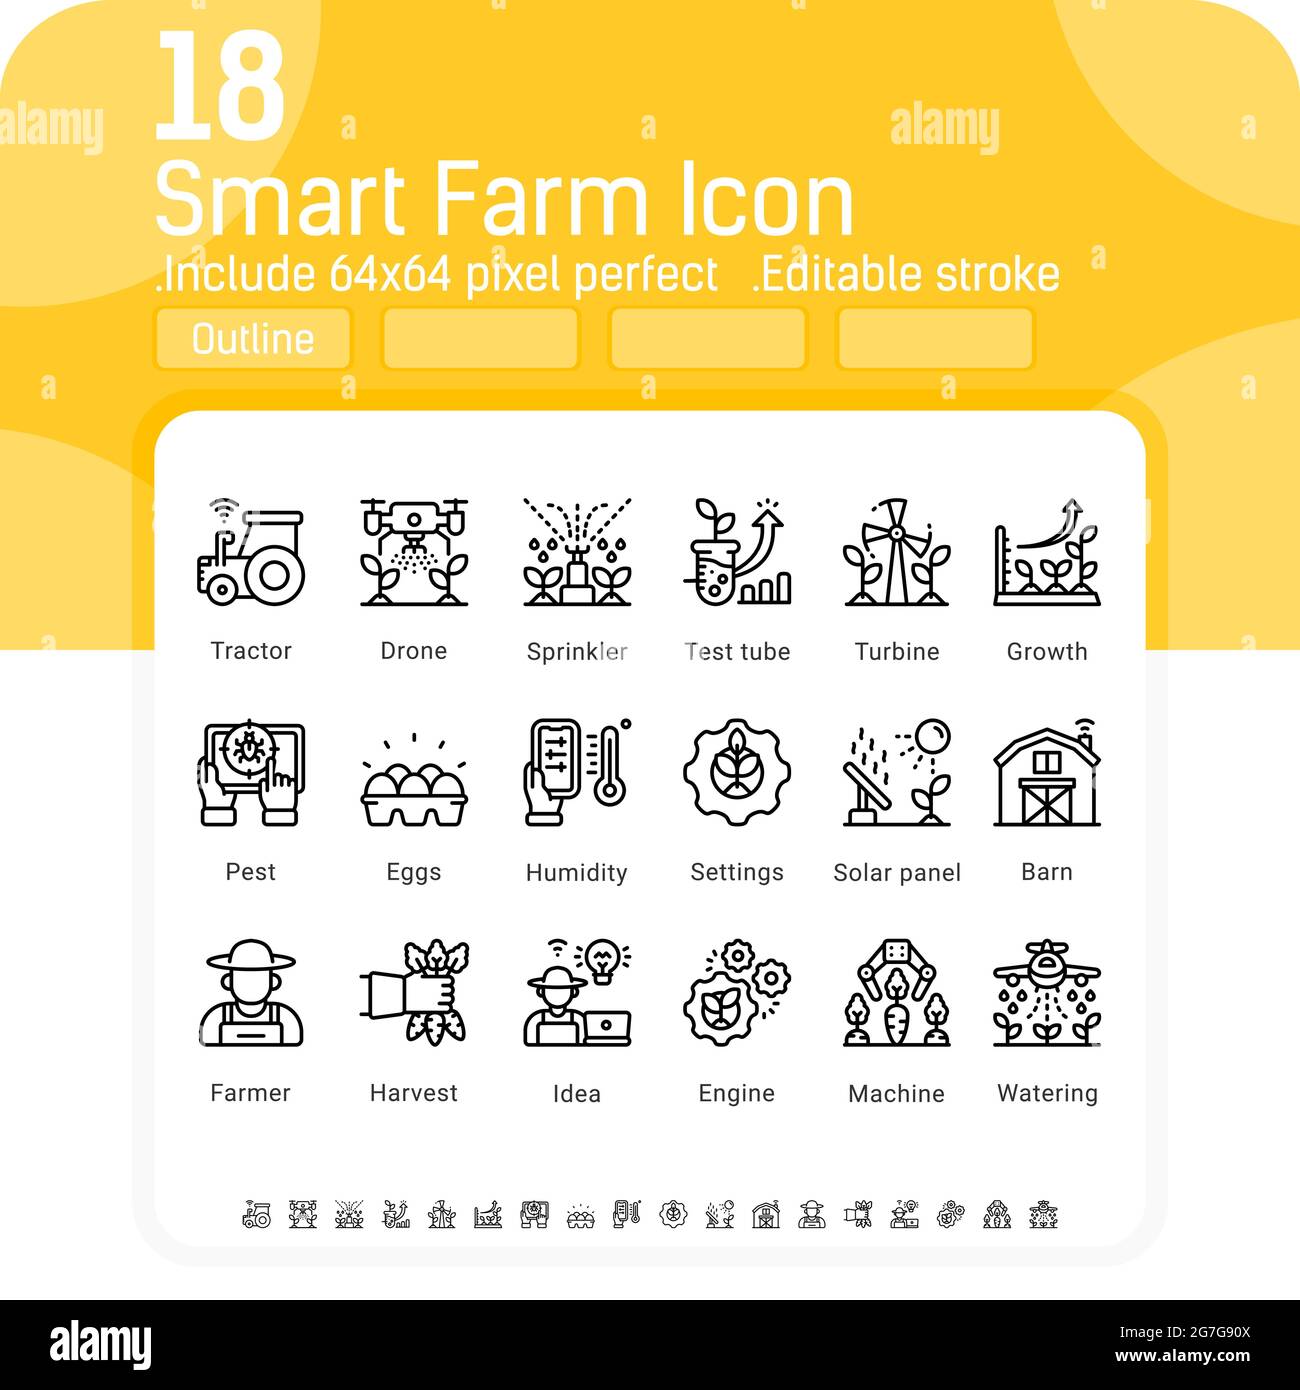 Vektorgrafik Smart Farm Symbol auf weißem Hintergrund isoliert gesetzt. Illustration skizzieren Symbole der Technologie Landwirtschaft, Innovation Farmer Management-Konzept Stock Vektor